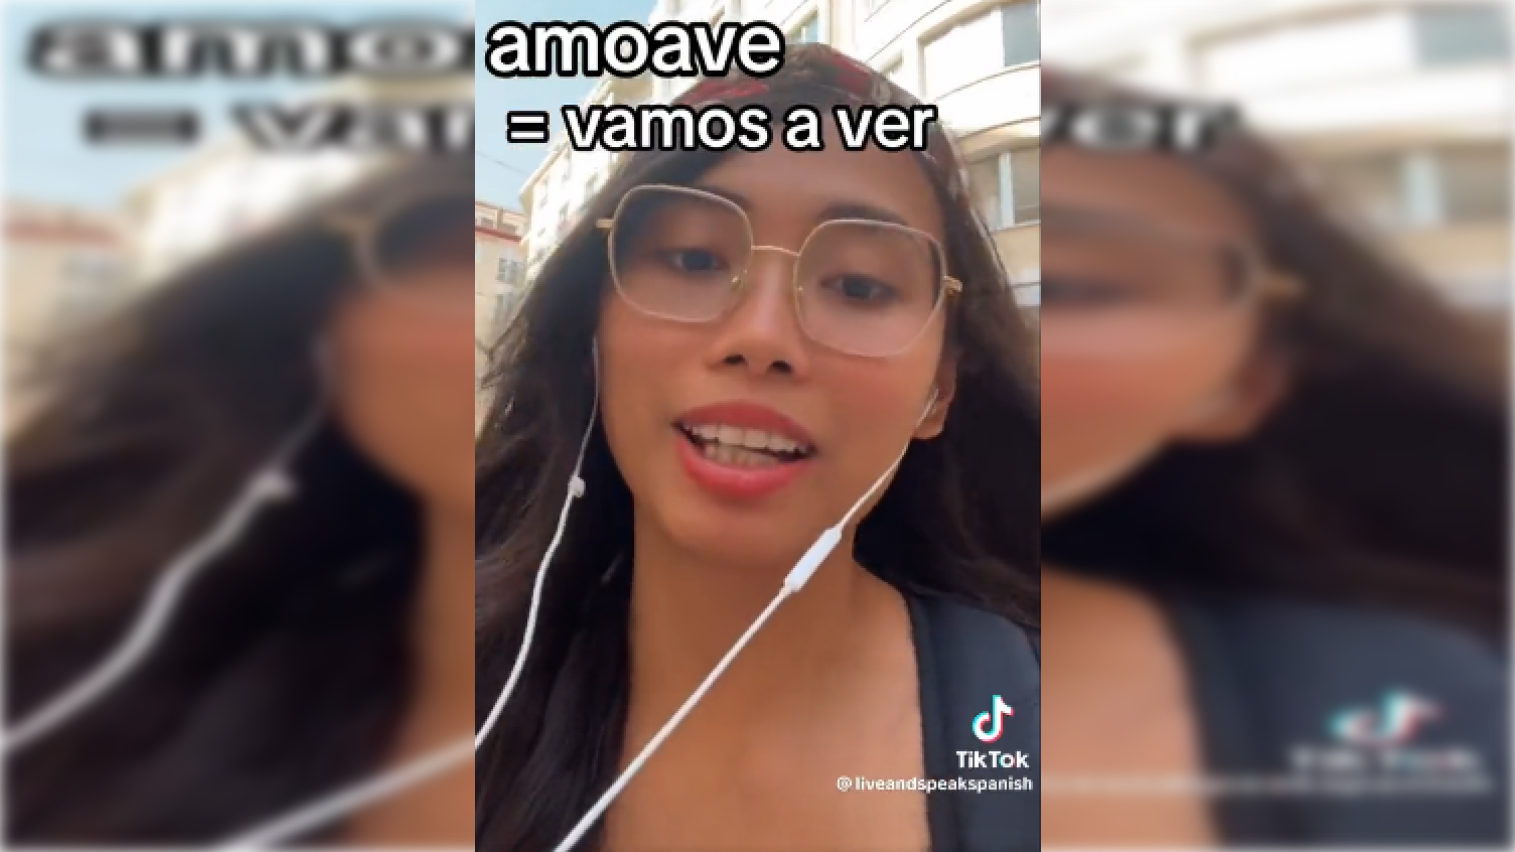 Una profesora de español extranjera viaja a Málaga y alucina con las expresiones "amové", "po" y "aro"